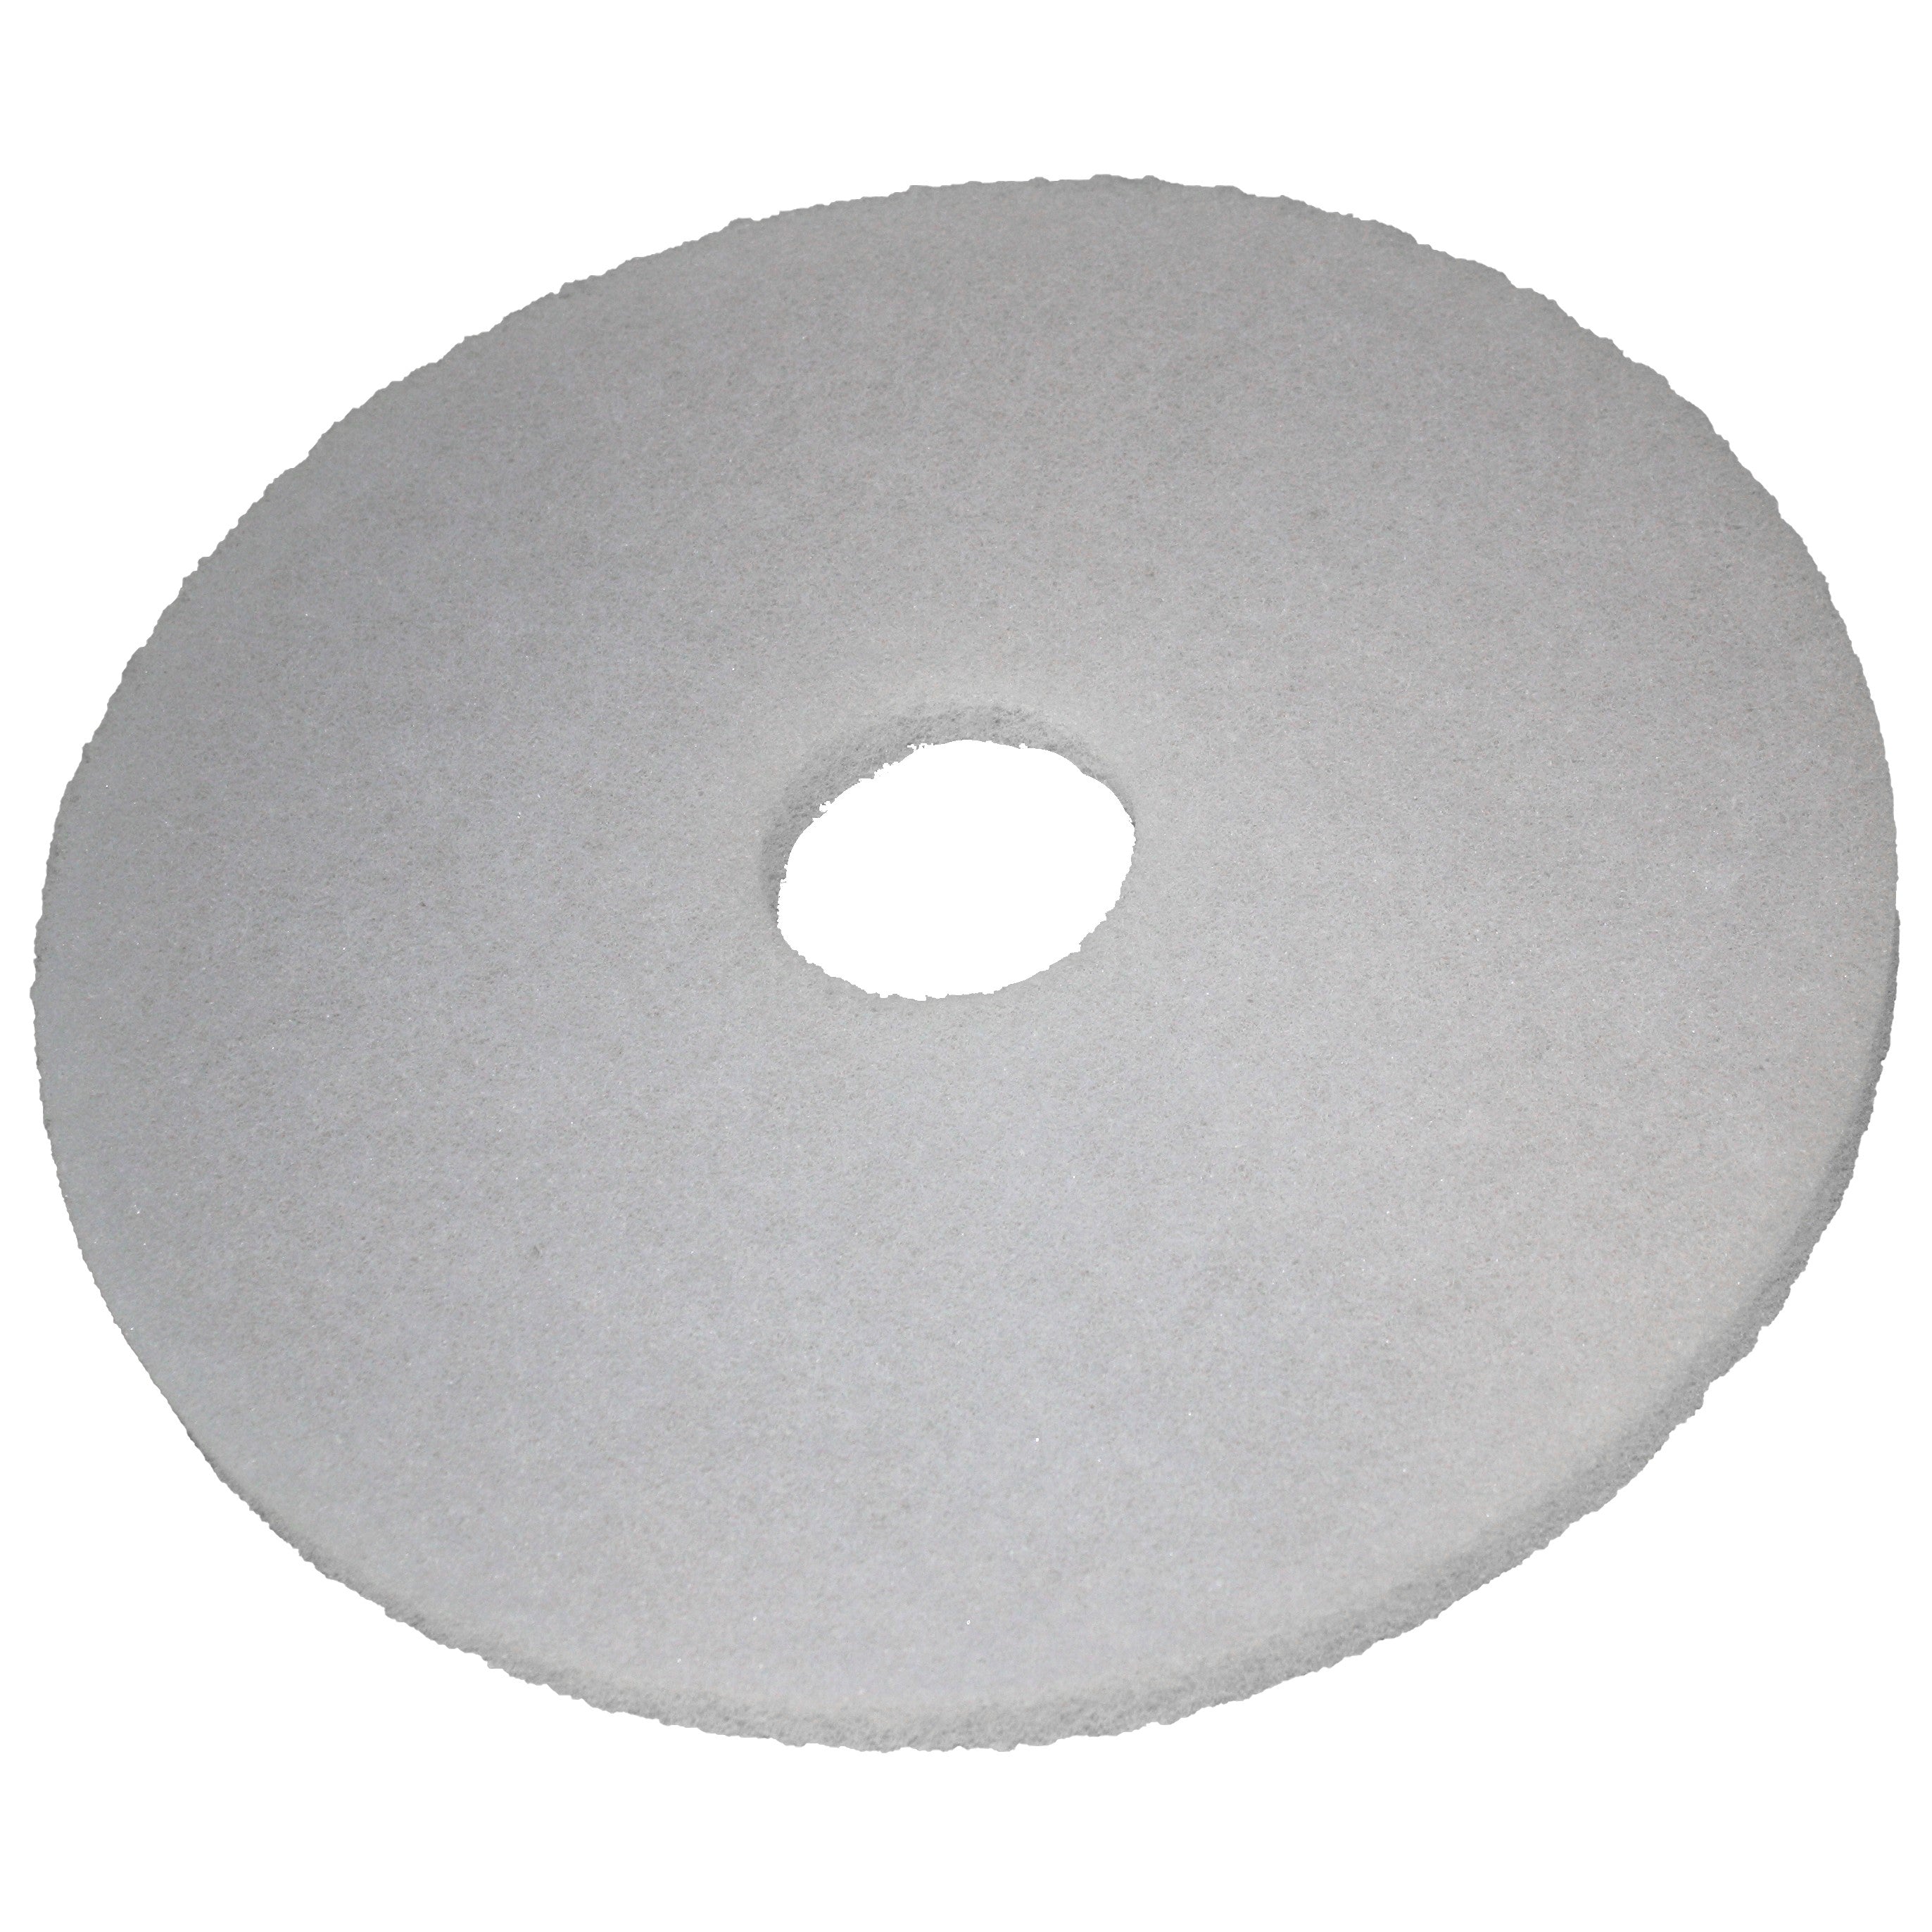 Pad blanc, Ø 381 mm, polyester